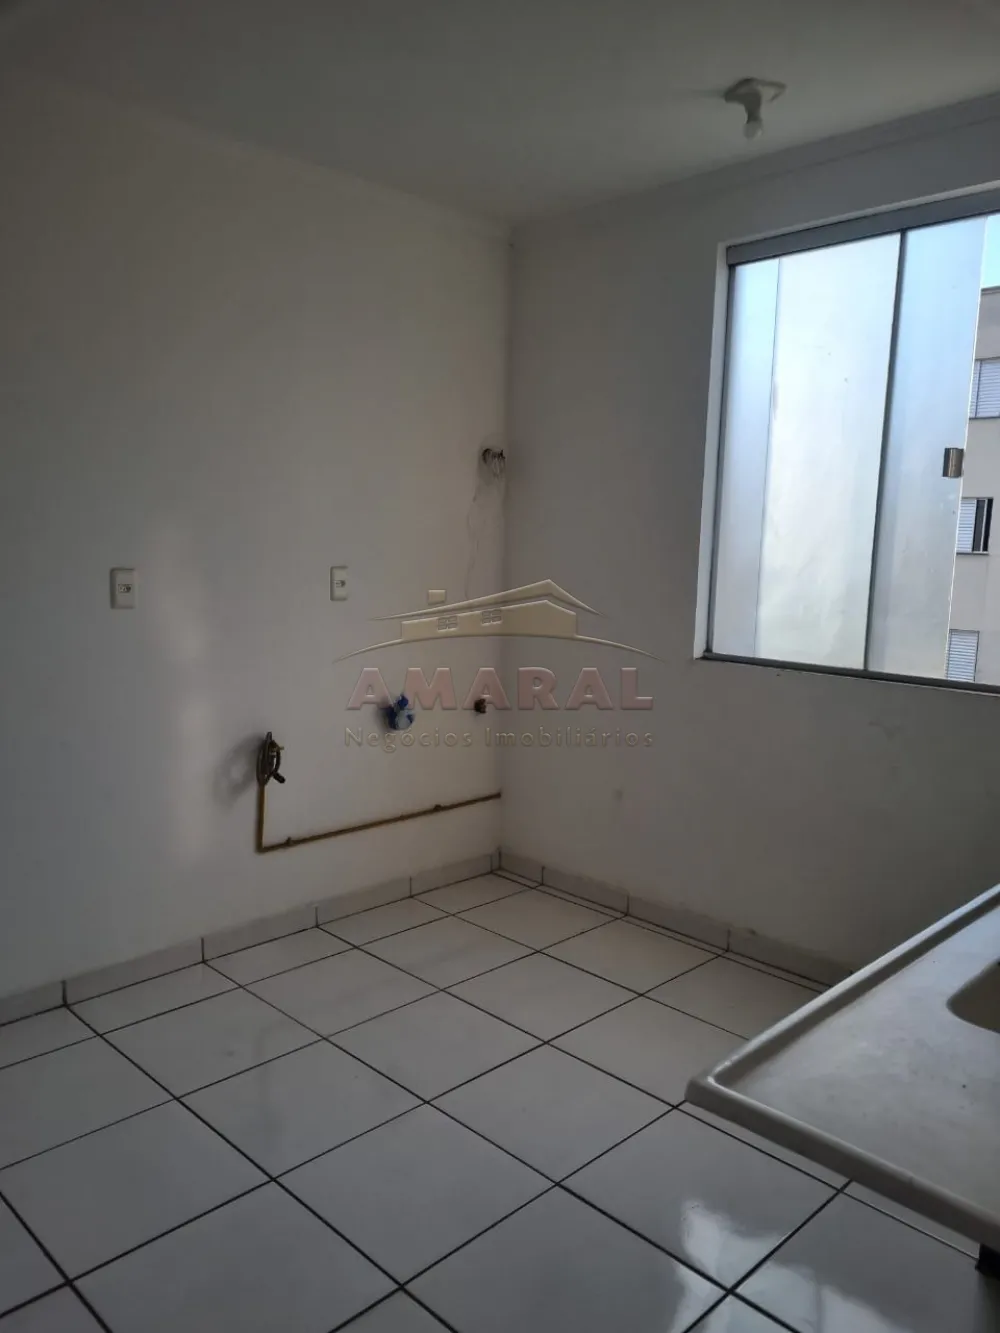 Alugar Apartamentos / Padrão em Suzano R$ 580,00 - Foto 9